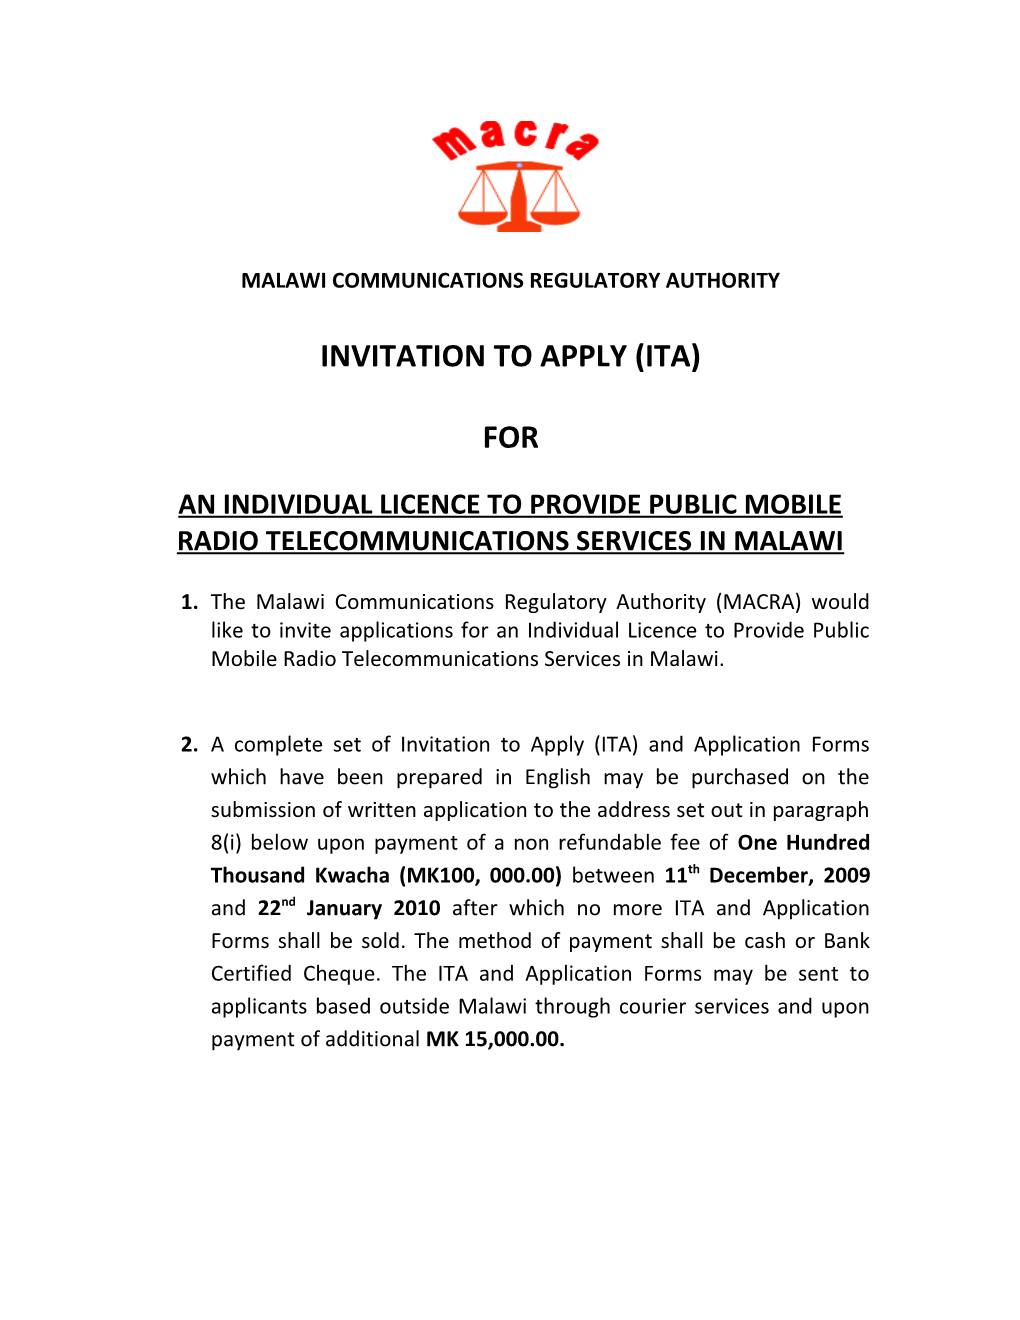 Malawi Communications Regulatory Authority